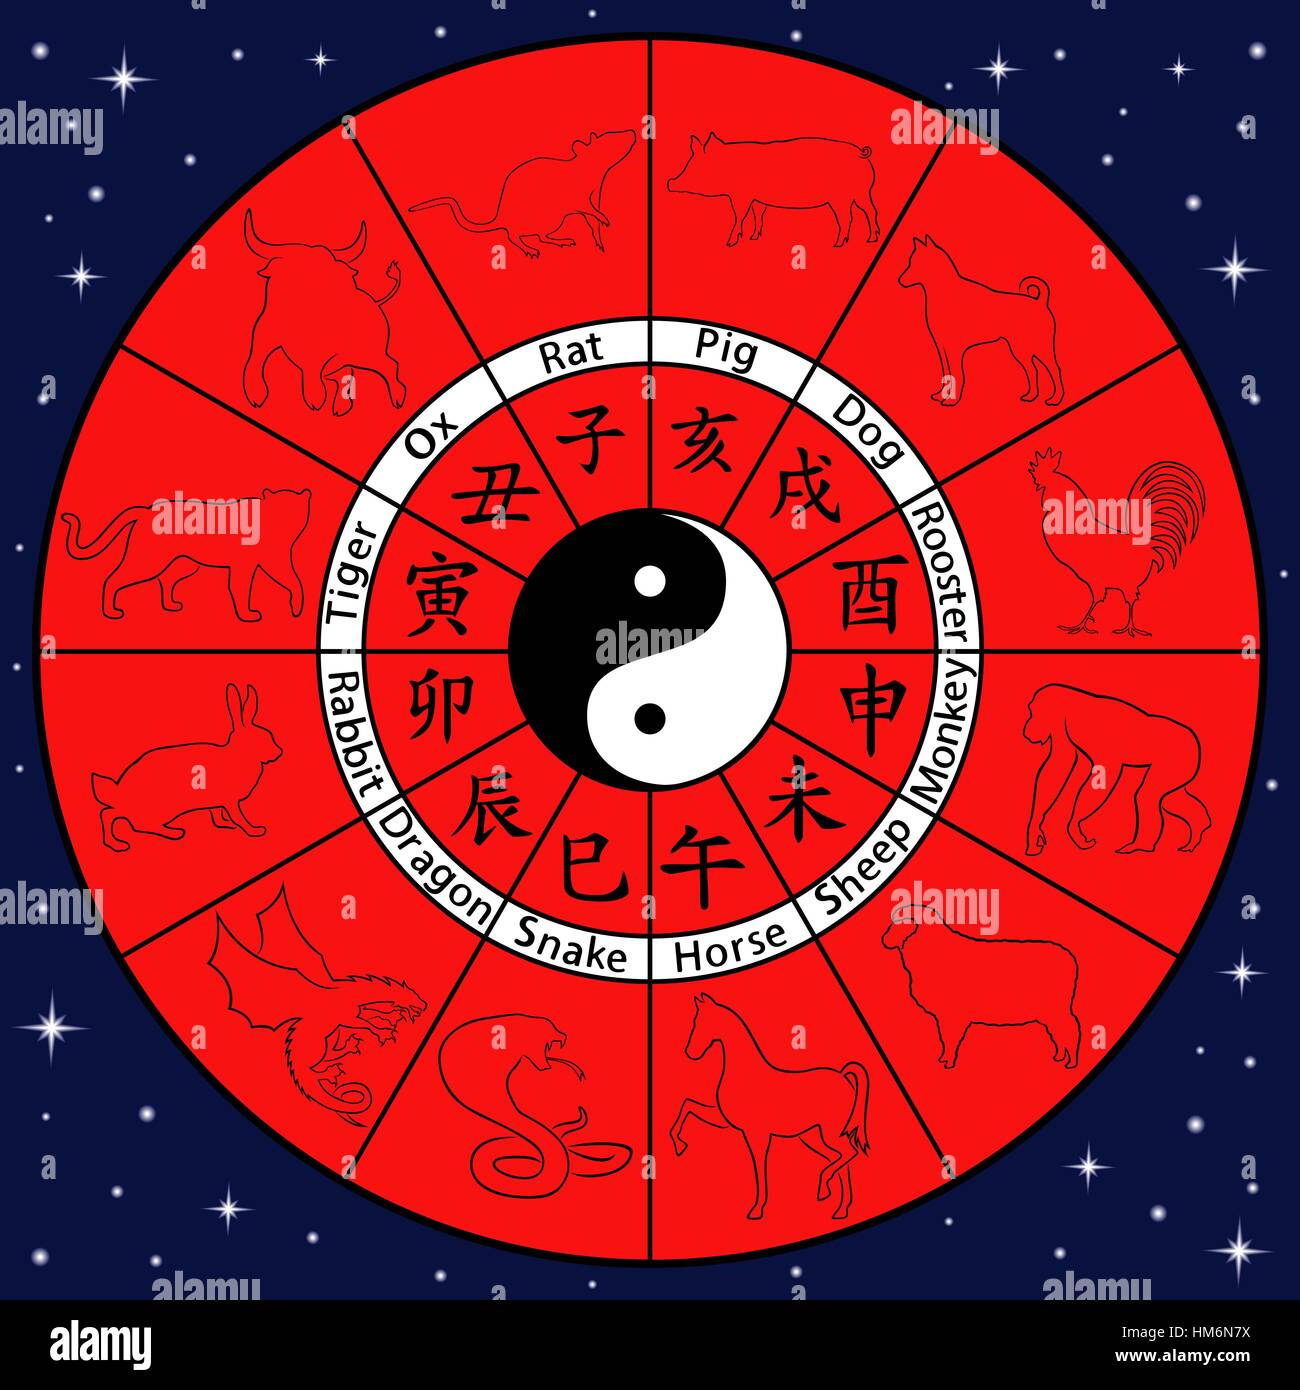 Zodiaque chinois avec des symboles sur le cercle et le Yin et le Yang dans le centre d'illustration vectorielle, principalement dans les couleurs bleu et rouge Illustration de Vecteur